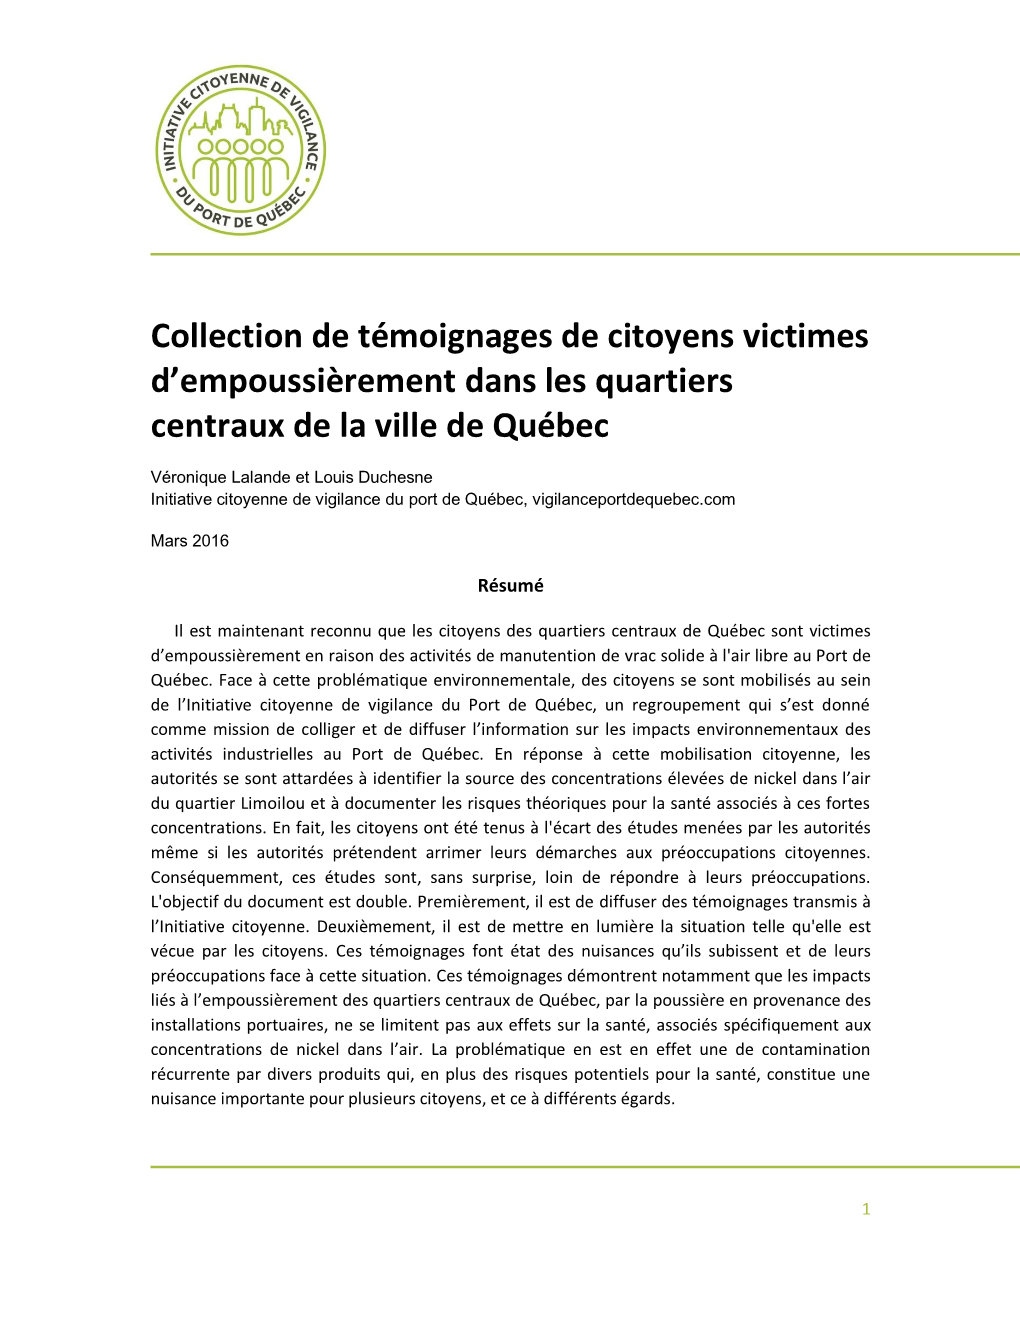 Collection De Témoignages De Citoyens Victimes D’Empoussièrement Dans Les Quartiers Centraux De La Ville De Québec